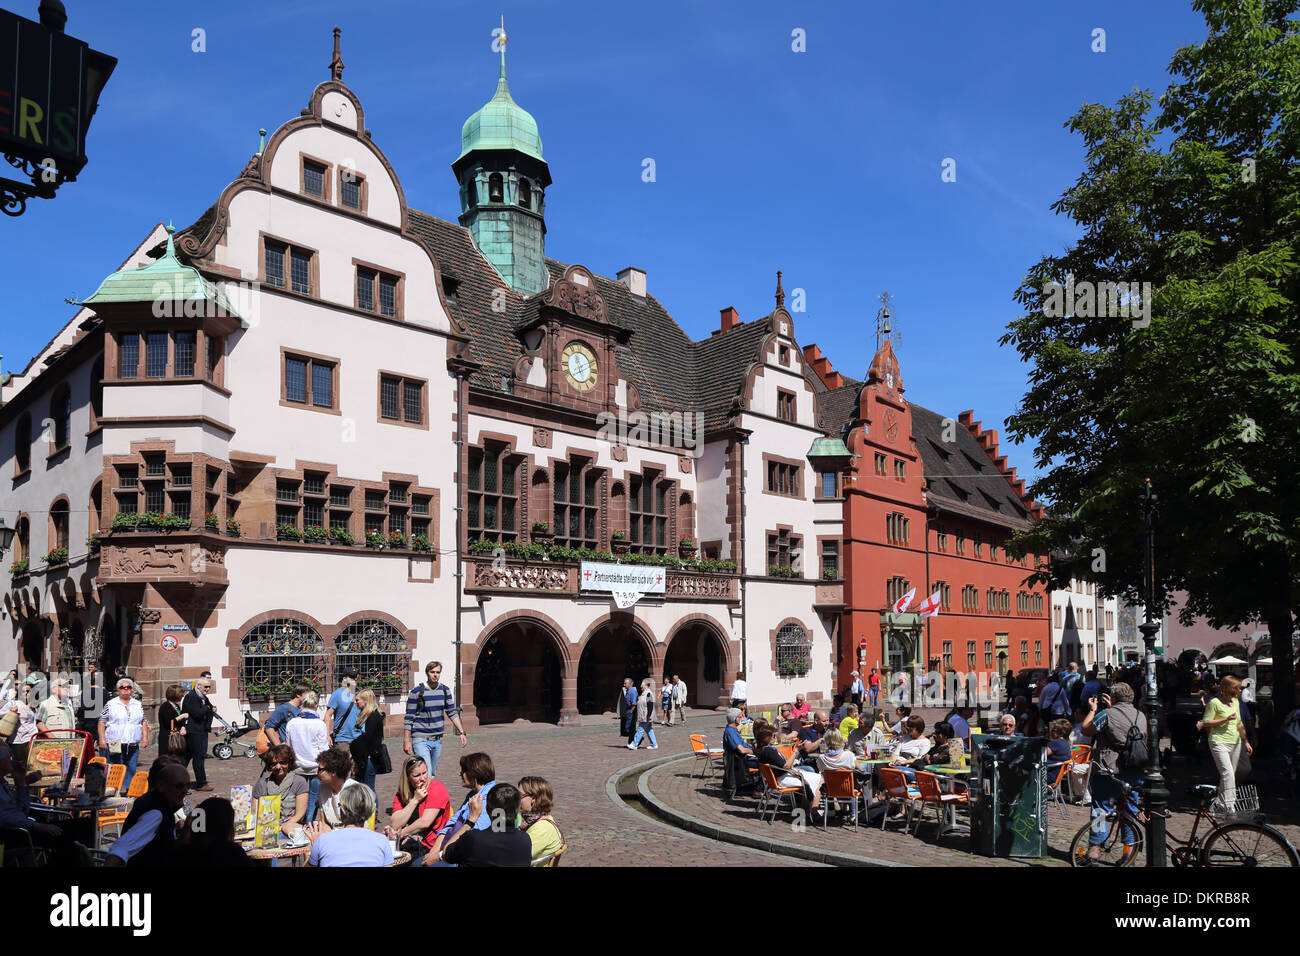 Freiburg im Breisgau town hall square Stock Photo